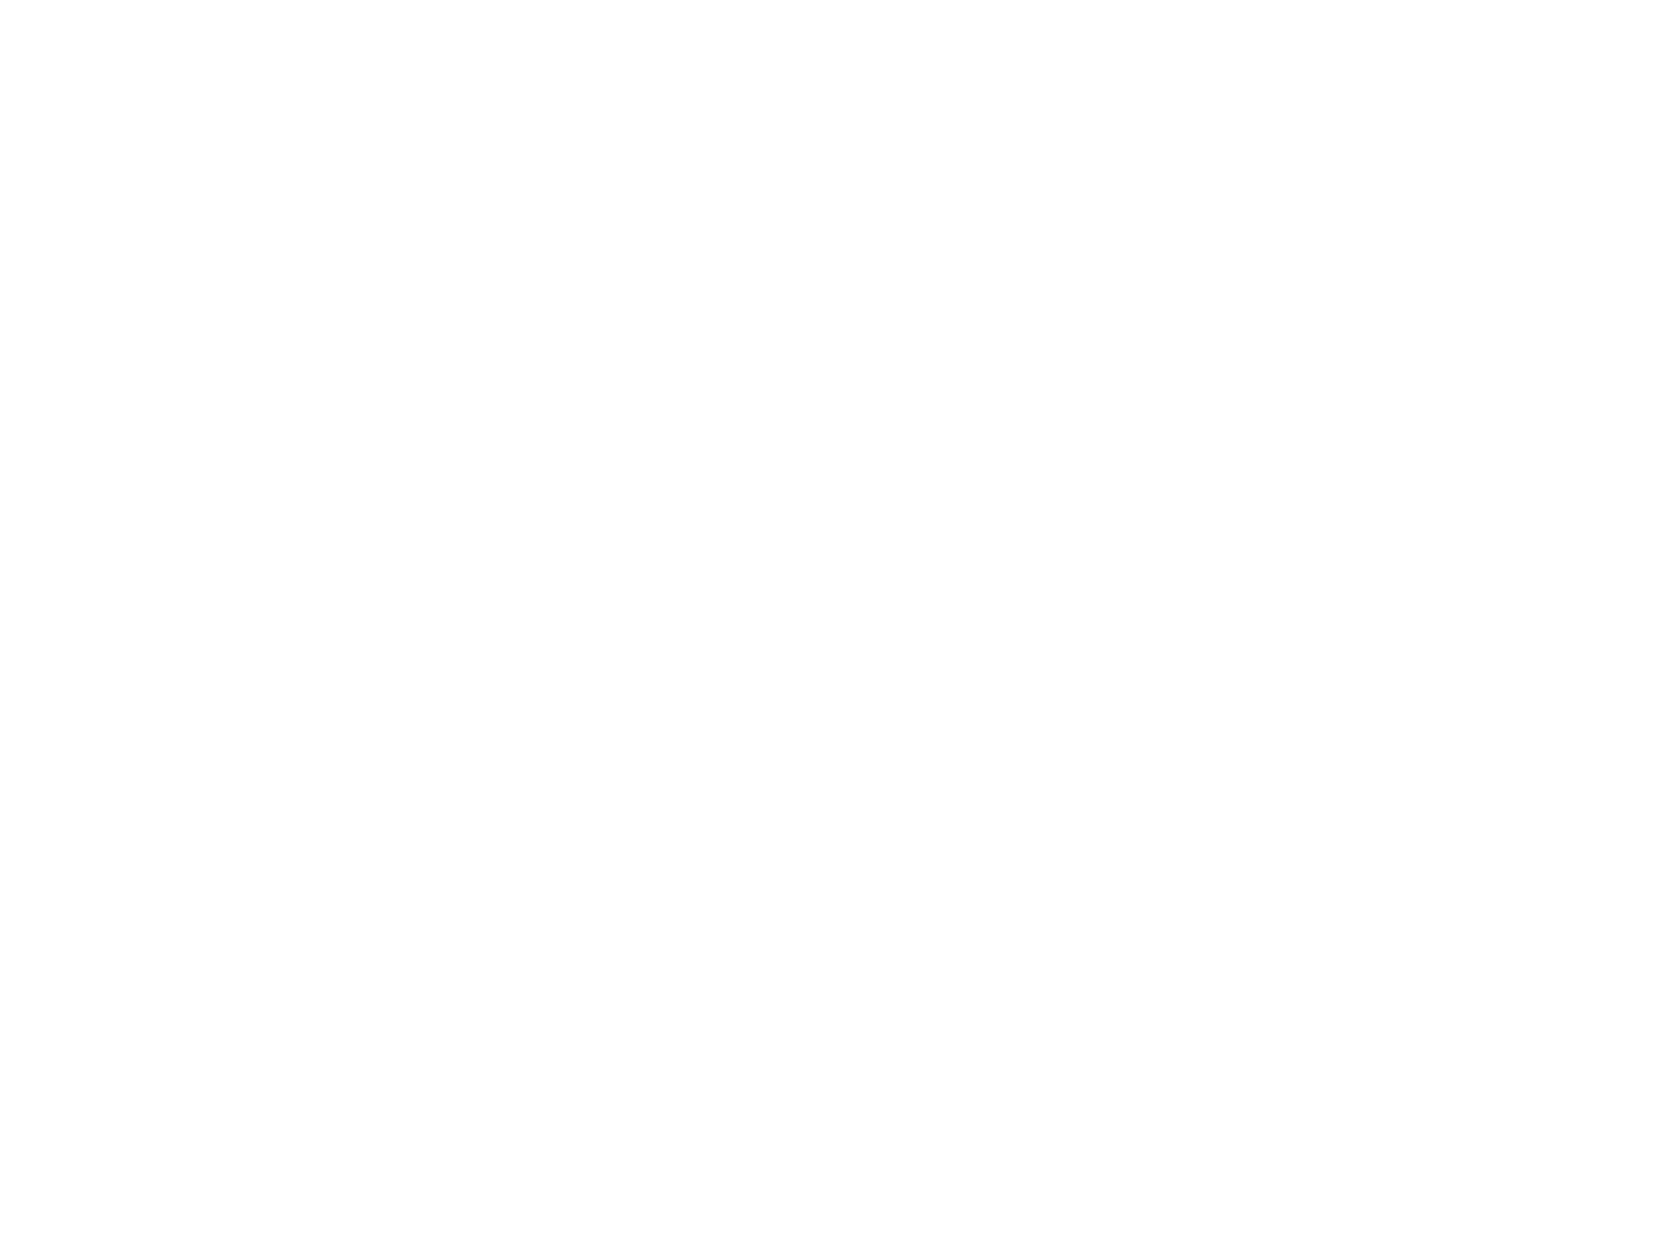 Кострома, Костромская область, Церковь Всемилостивого Спаса из села Фоминское, музей деревянного зодчества